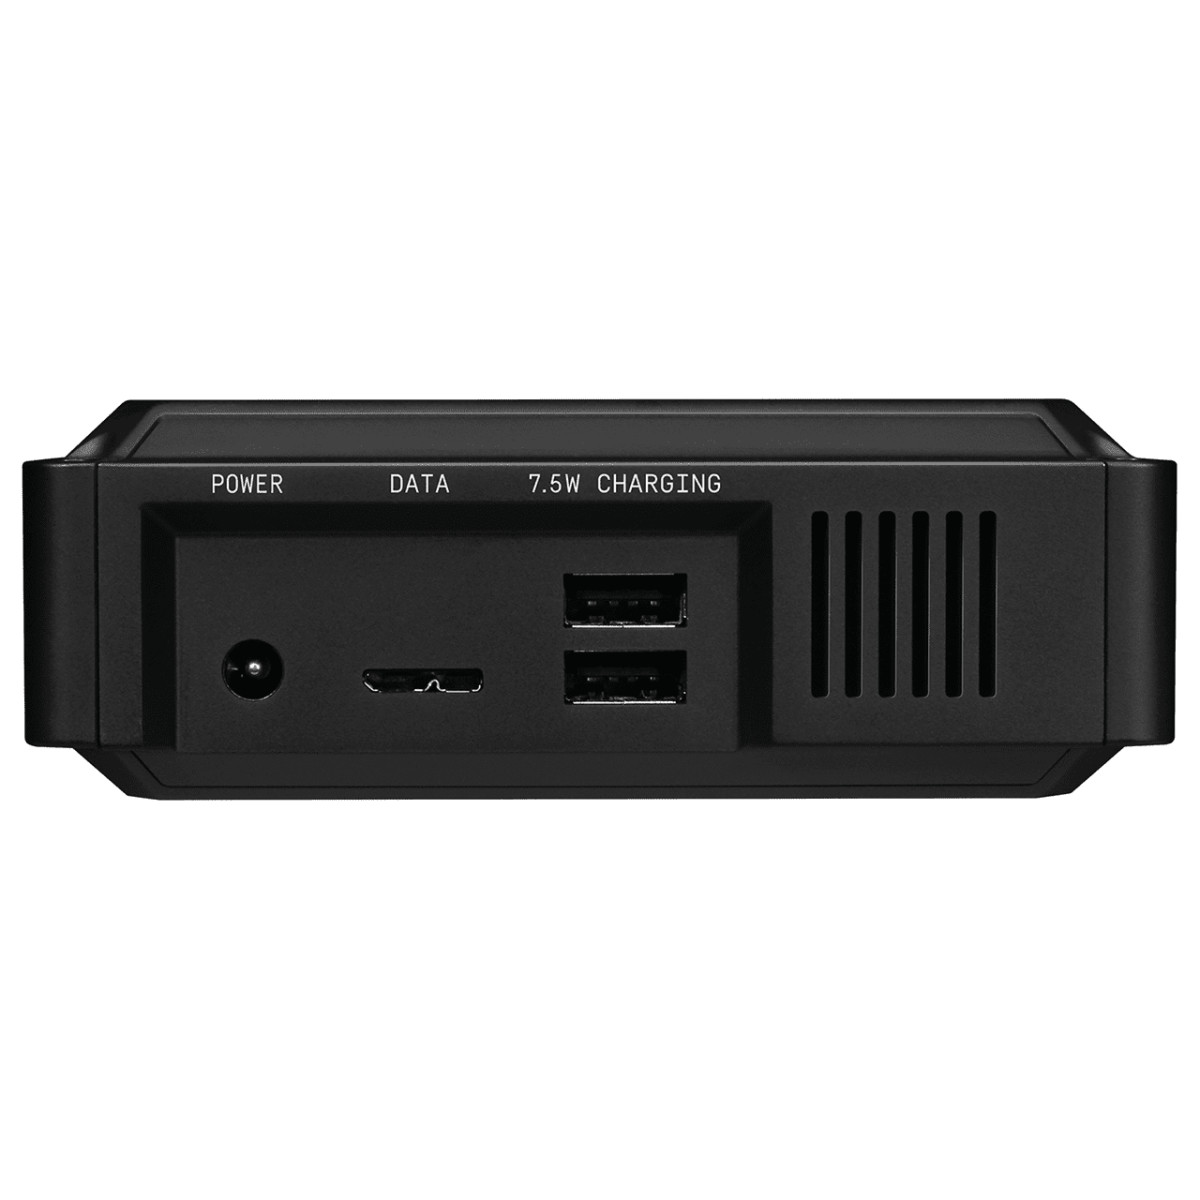 HDD Ext 8TB Black USB3.2 Blk